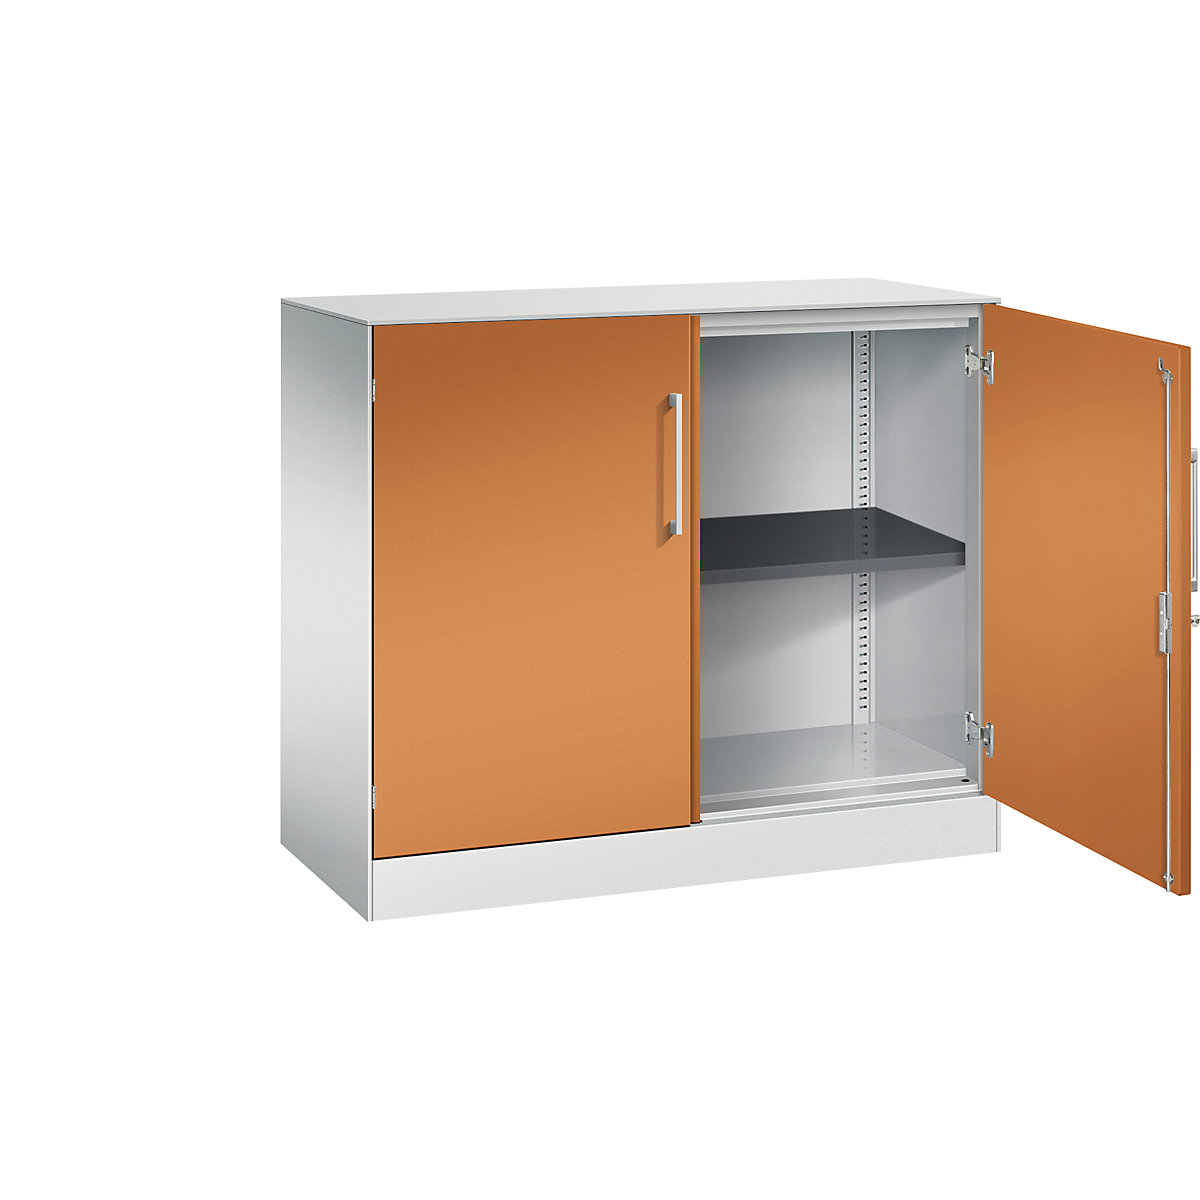 ASISTO double door cupboard, height 897 mm – C+P, width 1000 mm, 1 shelf, light grey/yellow orange-3